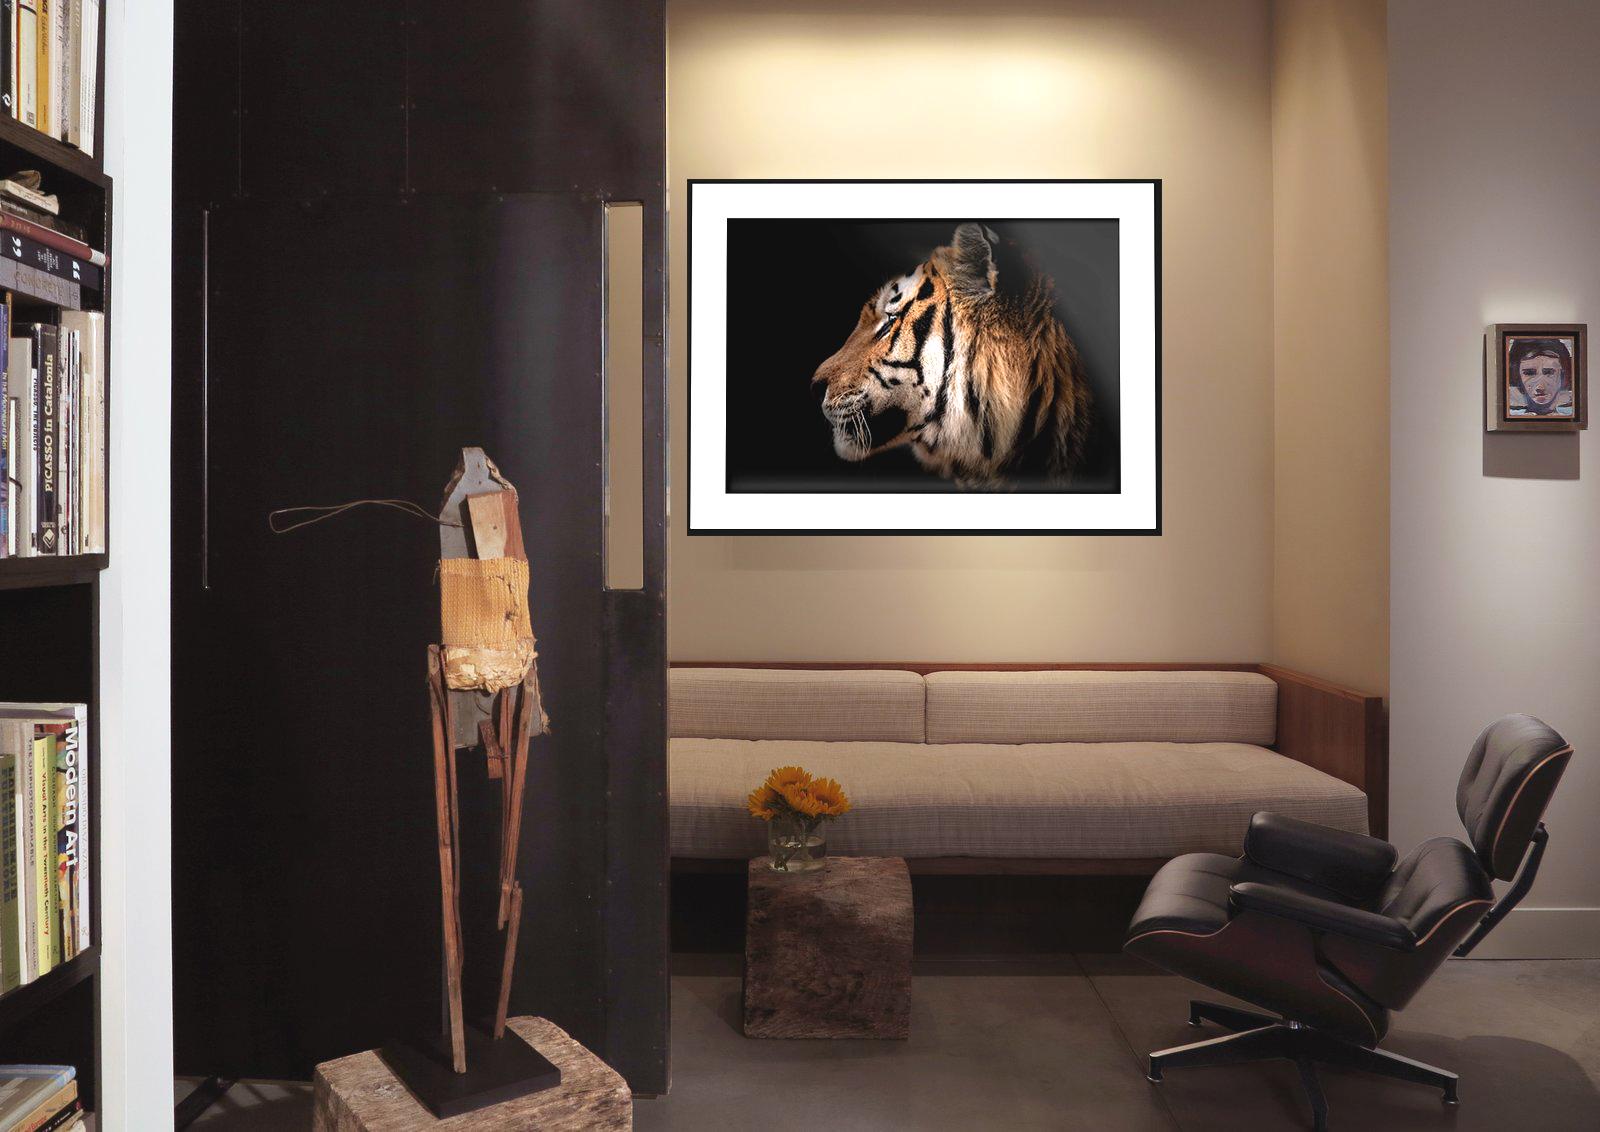 Il s'agit d'une photographie contemporaine d'un tigre réalisée par Shane Russeck. 
36X48 Edition de 12
Imprimé sur du papier d'archives avec des encres d'archives
Chantée et numérotée  

Shane Russeck est un photographe, un aventurier et un